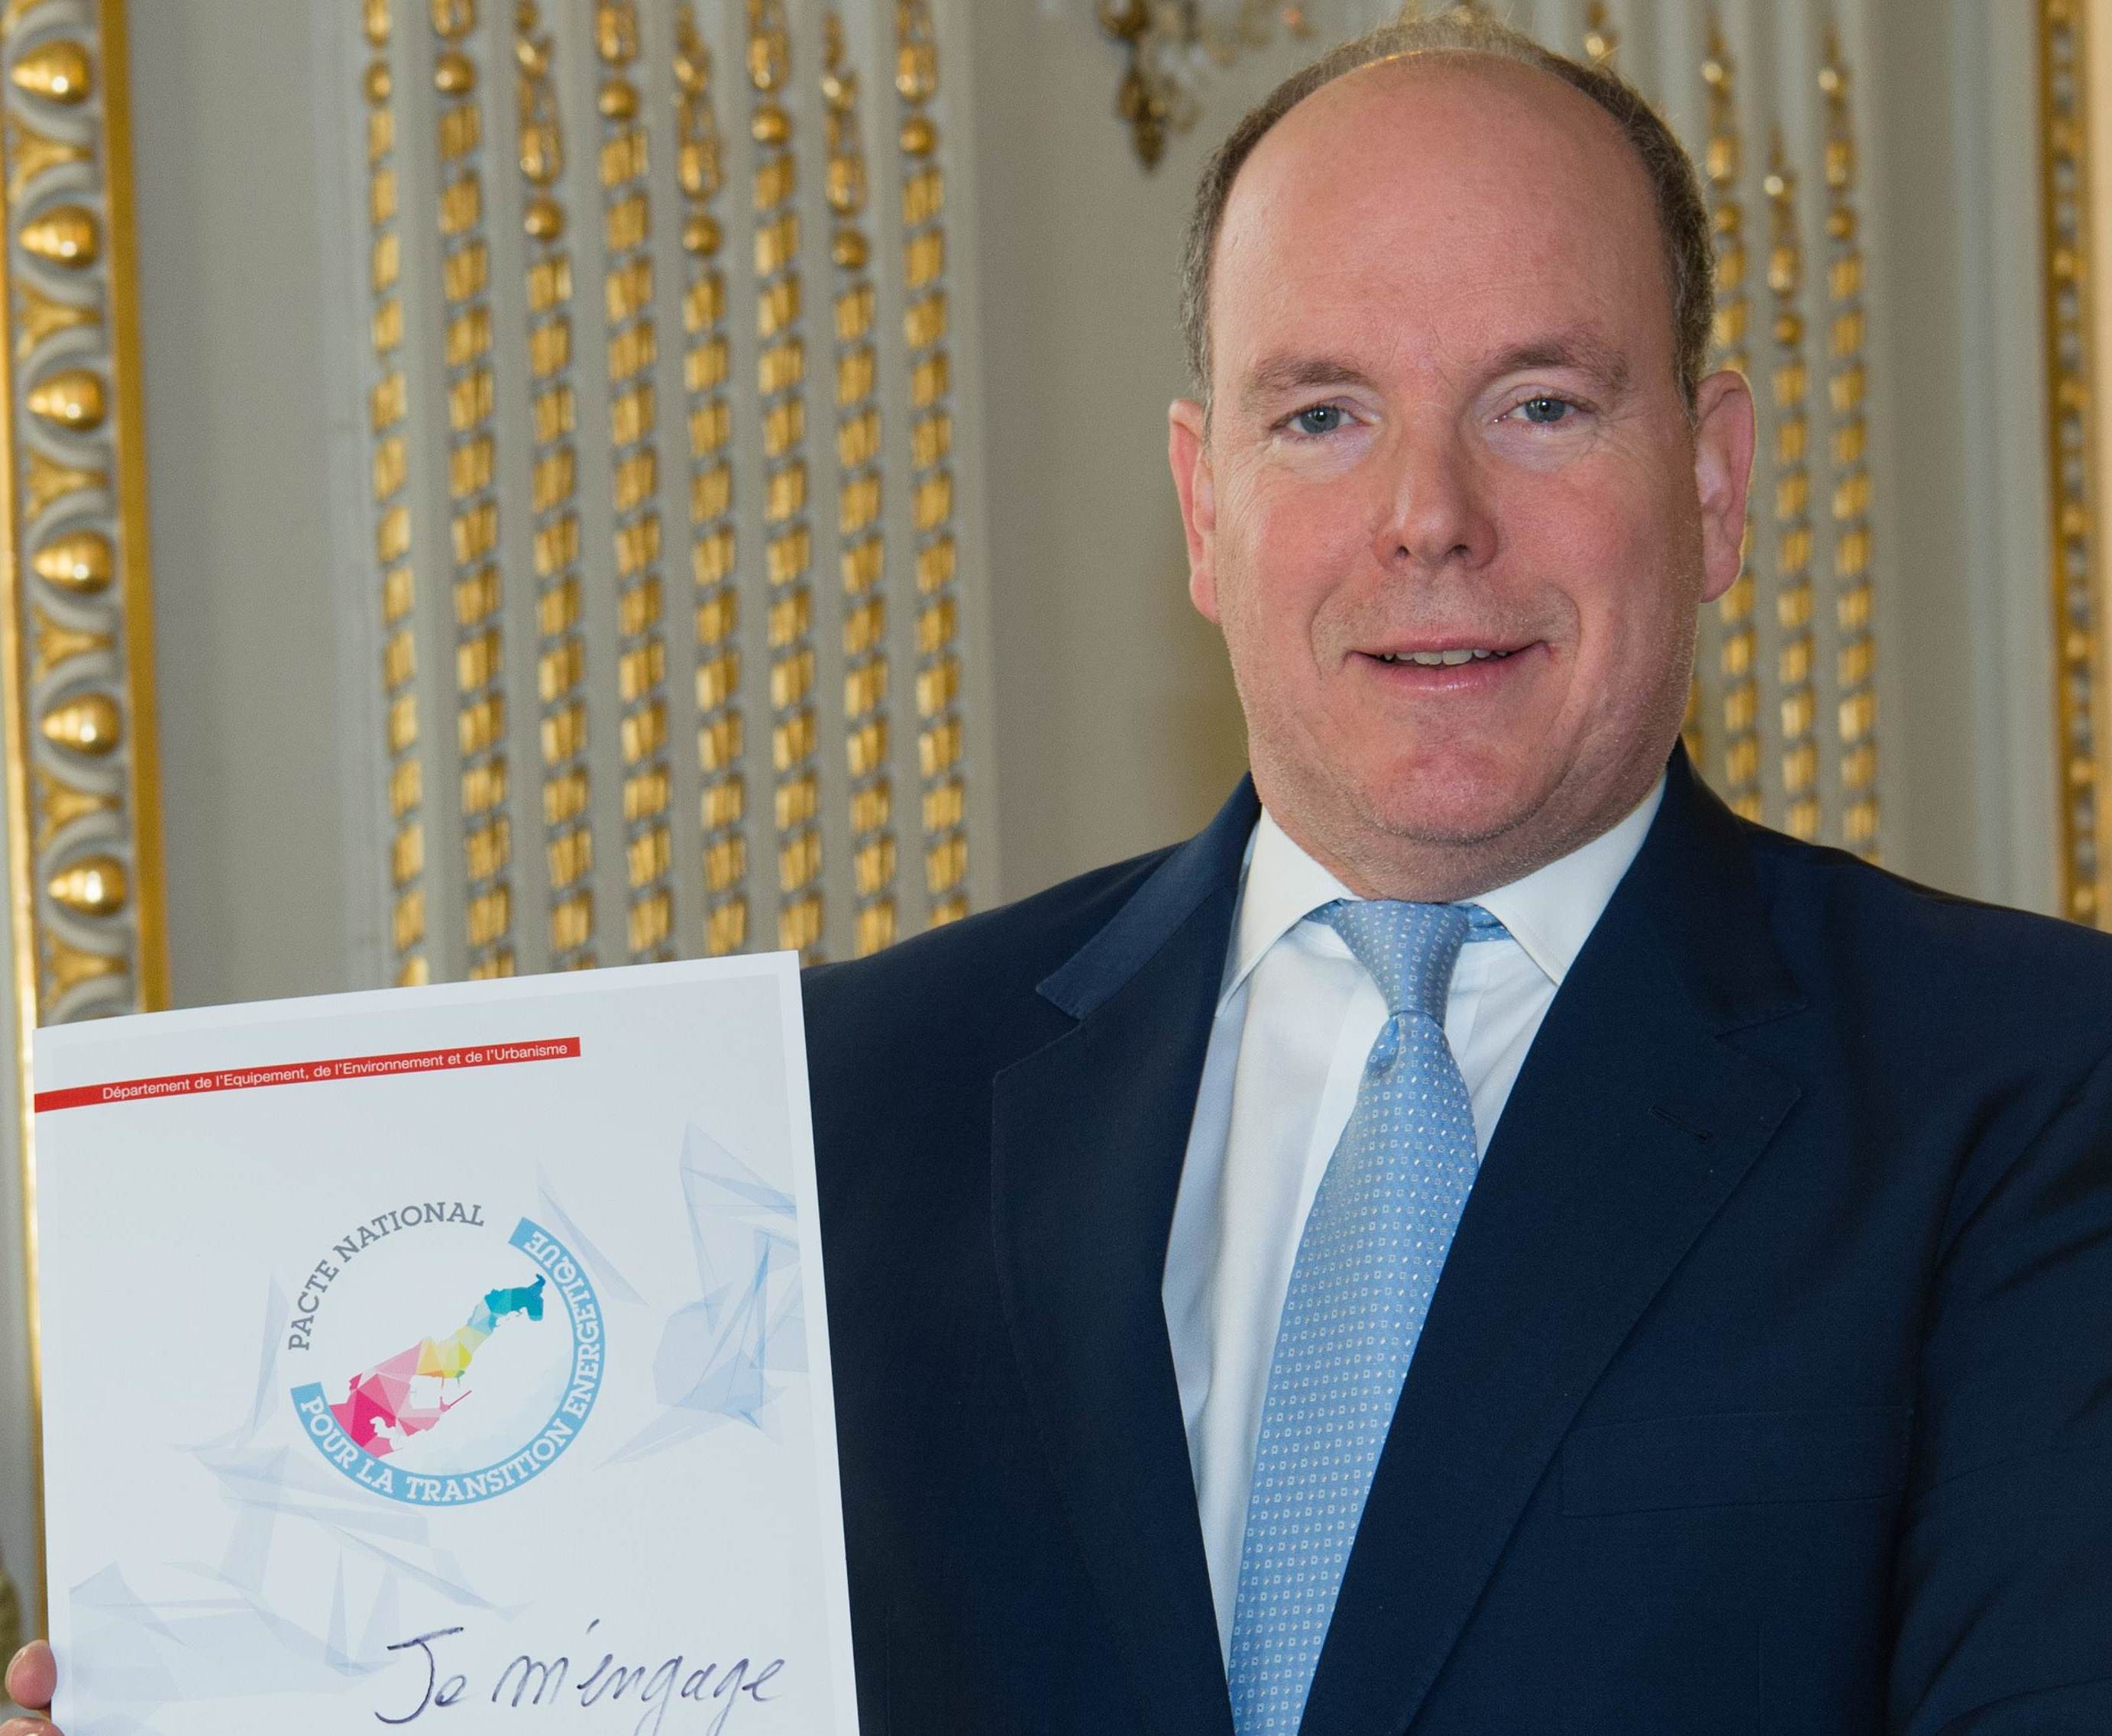 Patto Nazionale di Transizione Energetica: il Principe Alberto firma la prima Carta d'Impegno Ft.©Gaetan Luci/Palais Princier